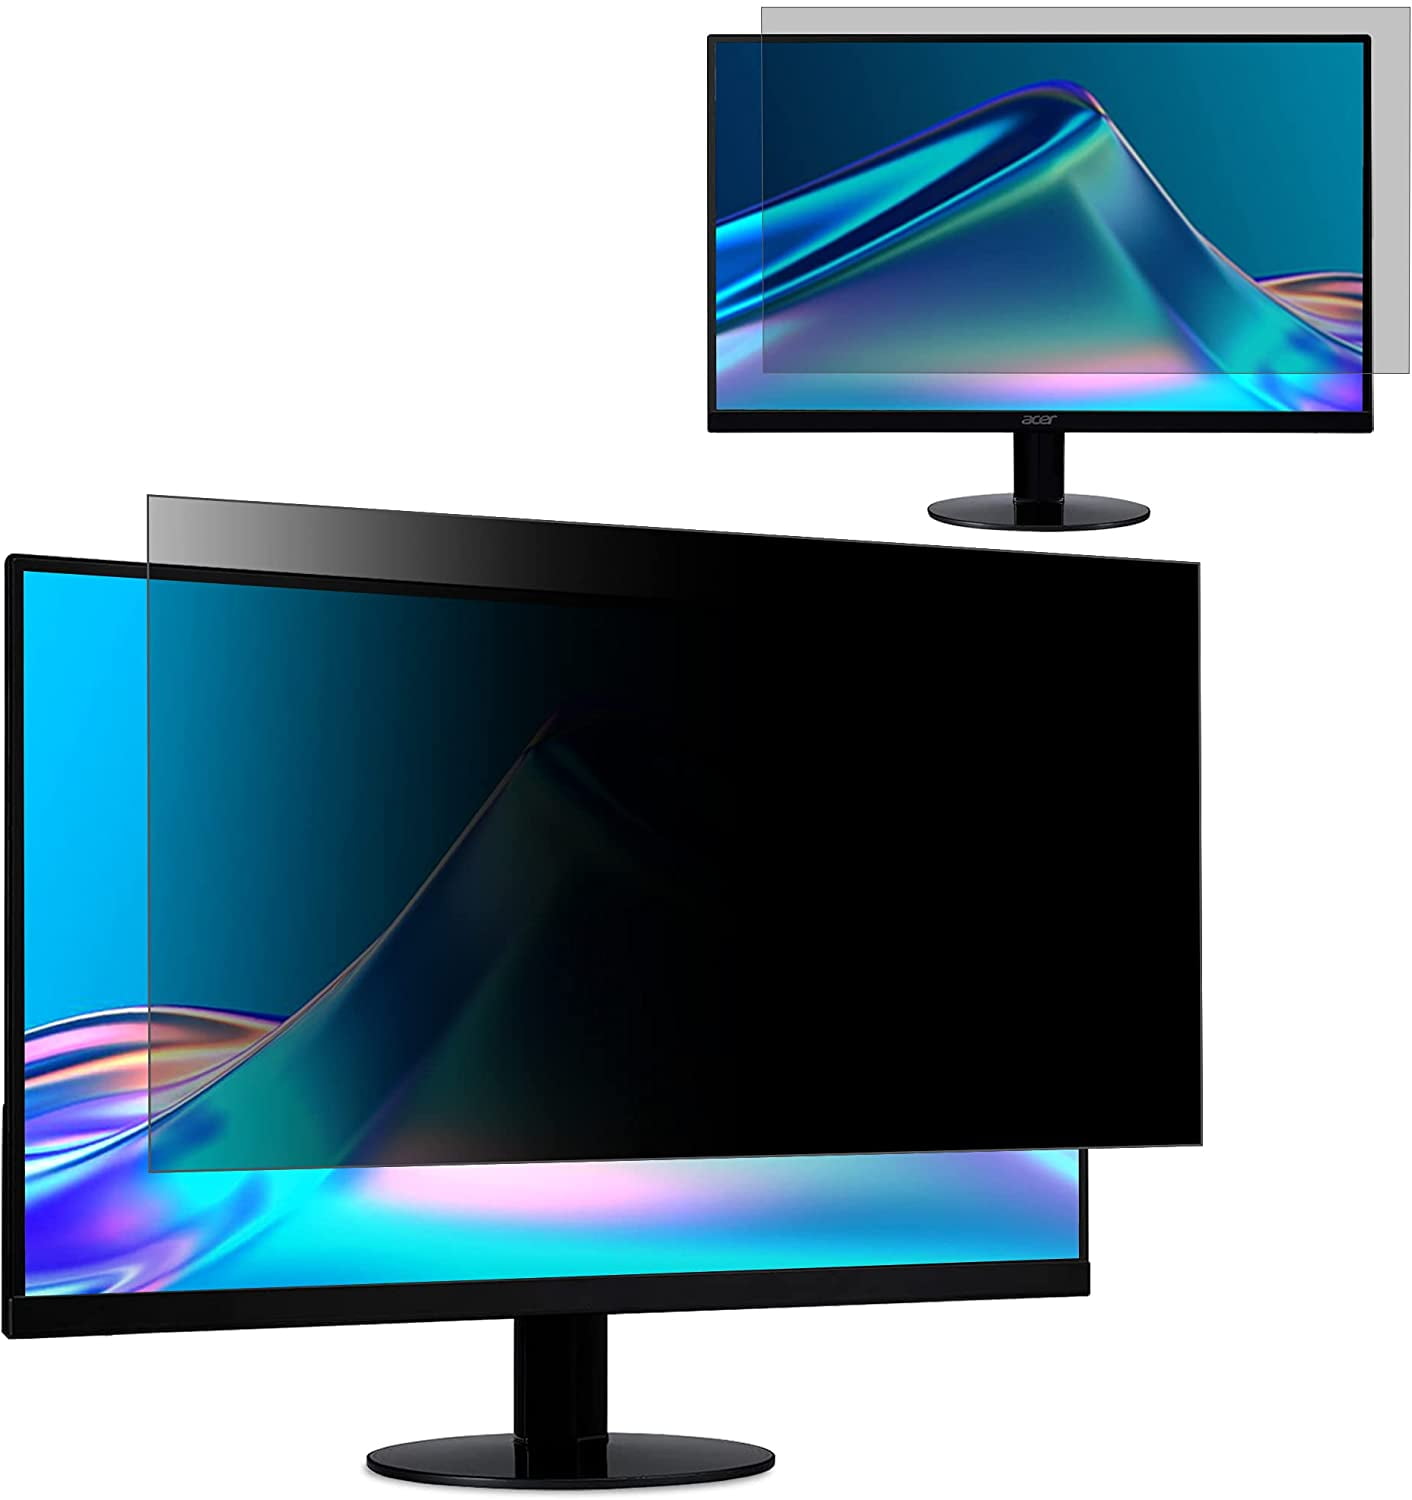 Widescreen Computer Monitors Size: 532mmx299mm WxH 16:9 Aspect Ratio ATOQUA 24 Inch Privacy Screen Filter for Anti-Spy and Anti-Glare Screen Protector 